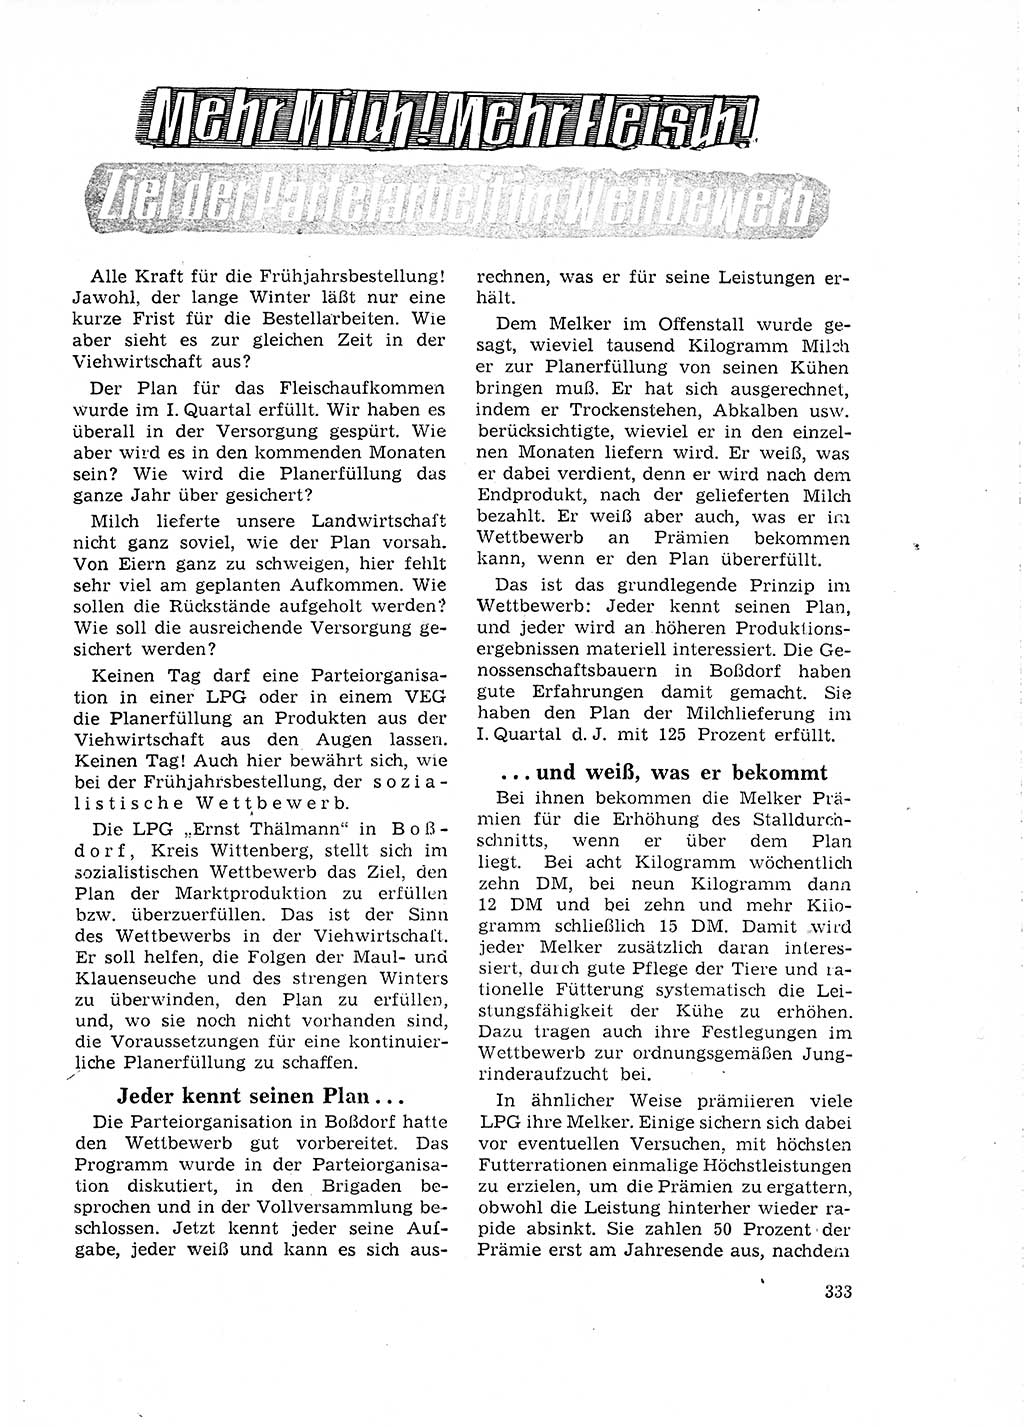 Neuer Weg (NW), Organ des Zentralkomitees (ZK) der SED (Sozialistische Einheitspartei Deutschlands) für Fragen des Parteilebens, 18. Jahrgang [Deutsche Demokratische Republik (DDR)] 1963, Seite 333 (NW ZK SED DDR 1963, S. 333)